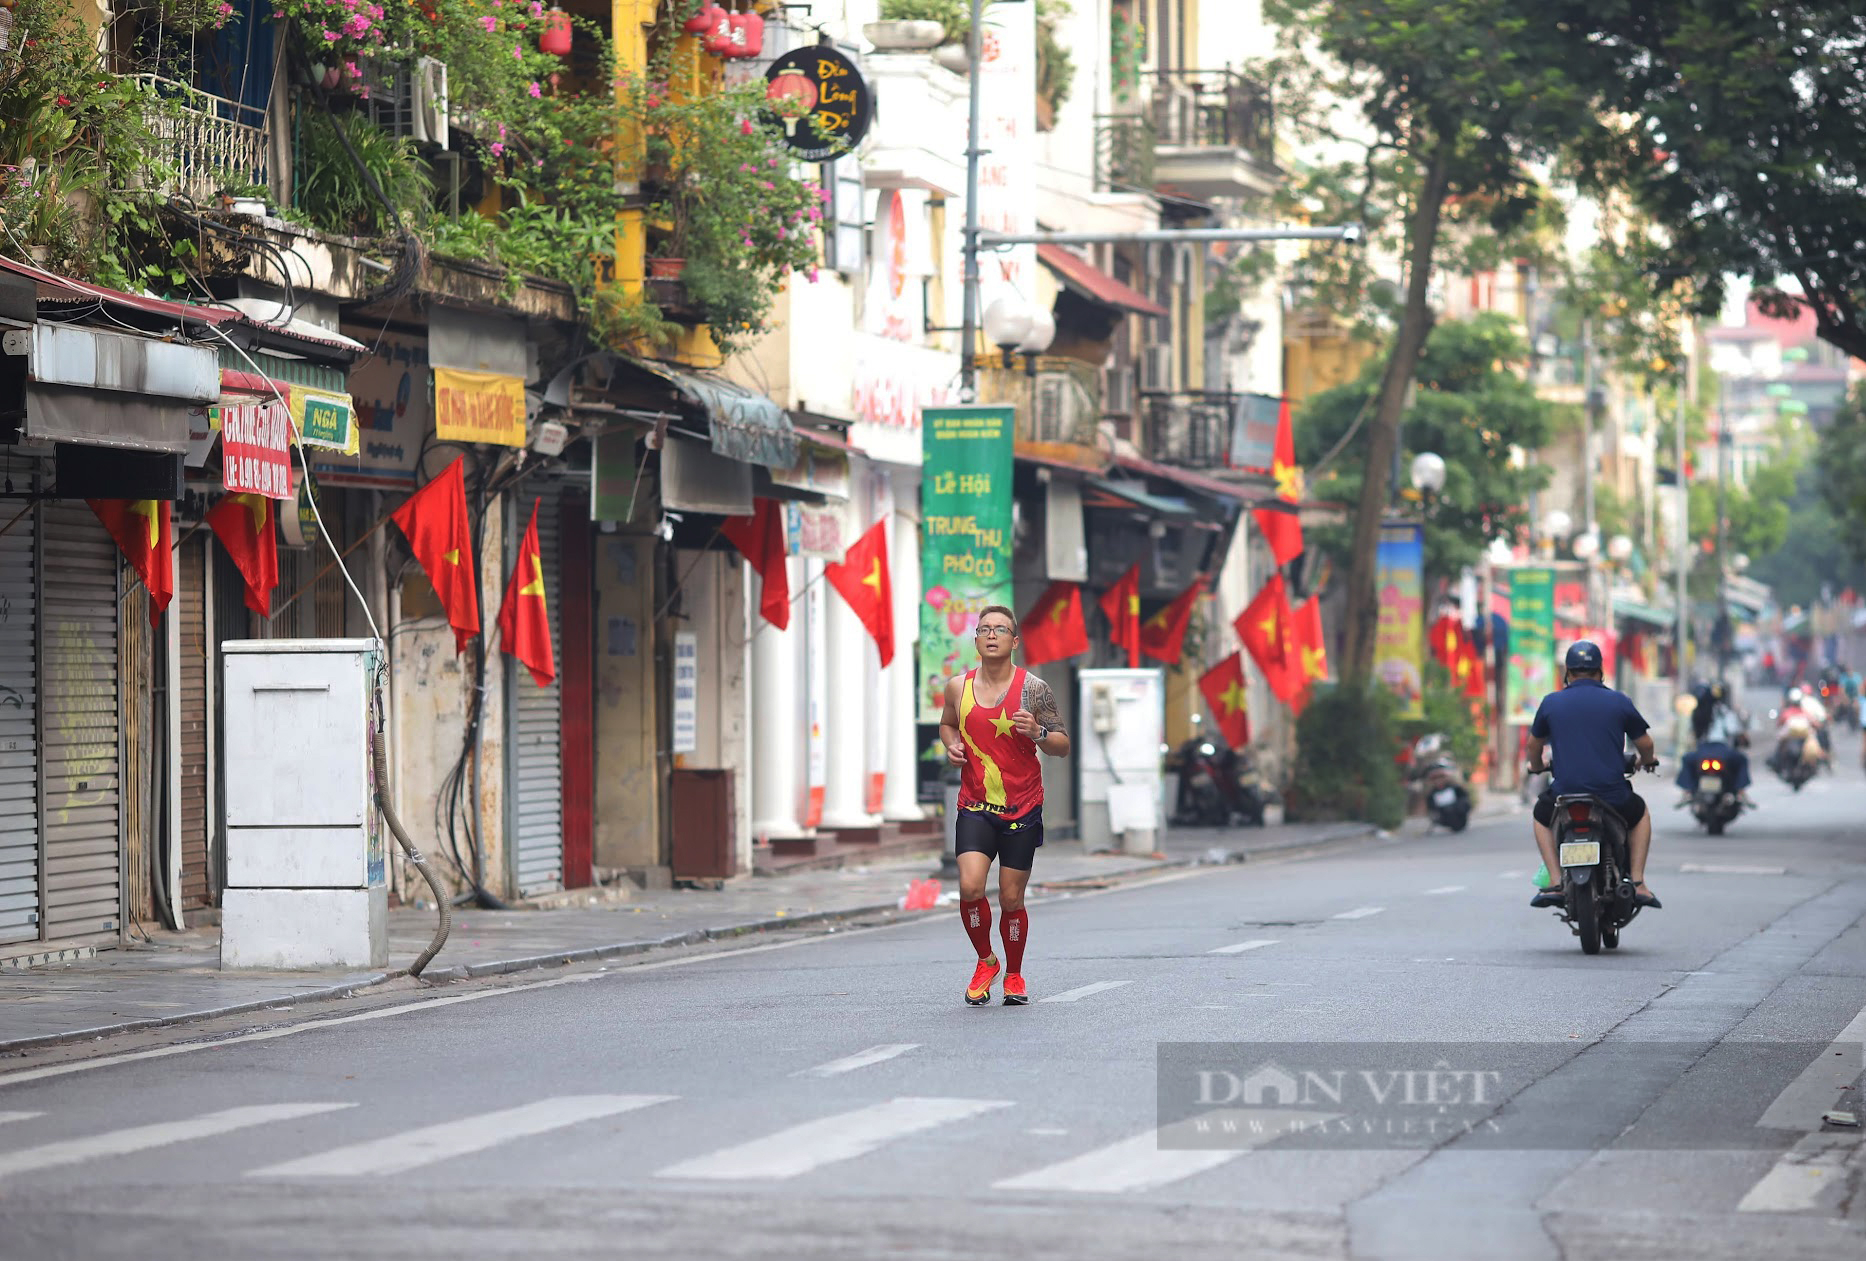 Hình ảnh bình dị trên đường phố Hà Nội trong ngày Quốc khánh 2/9 - Ảnh 3.